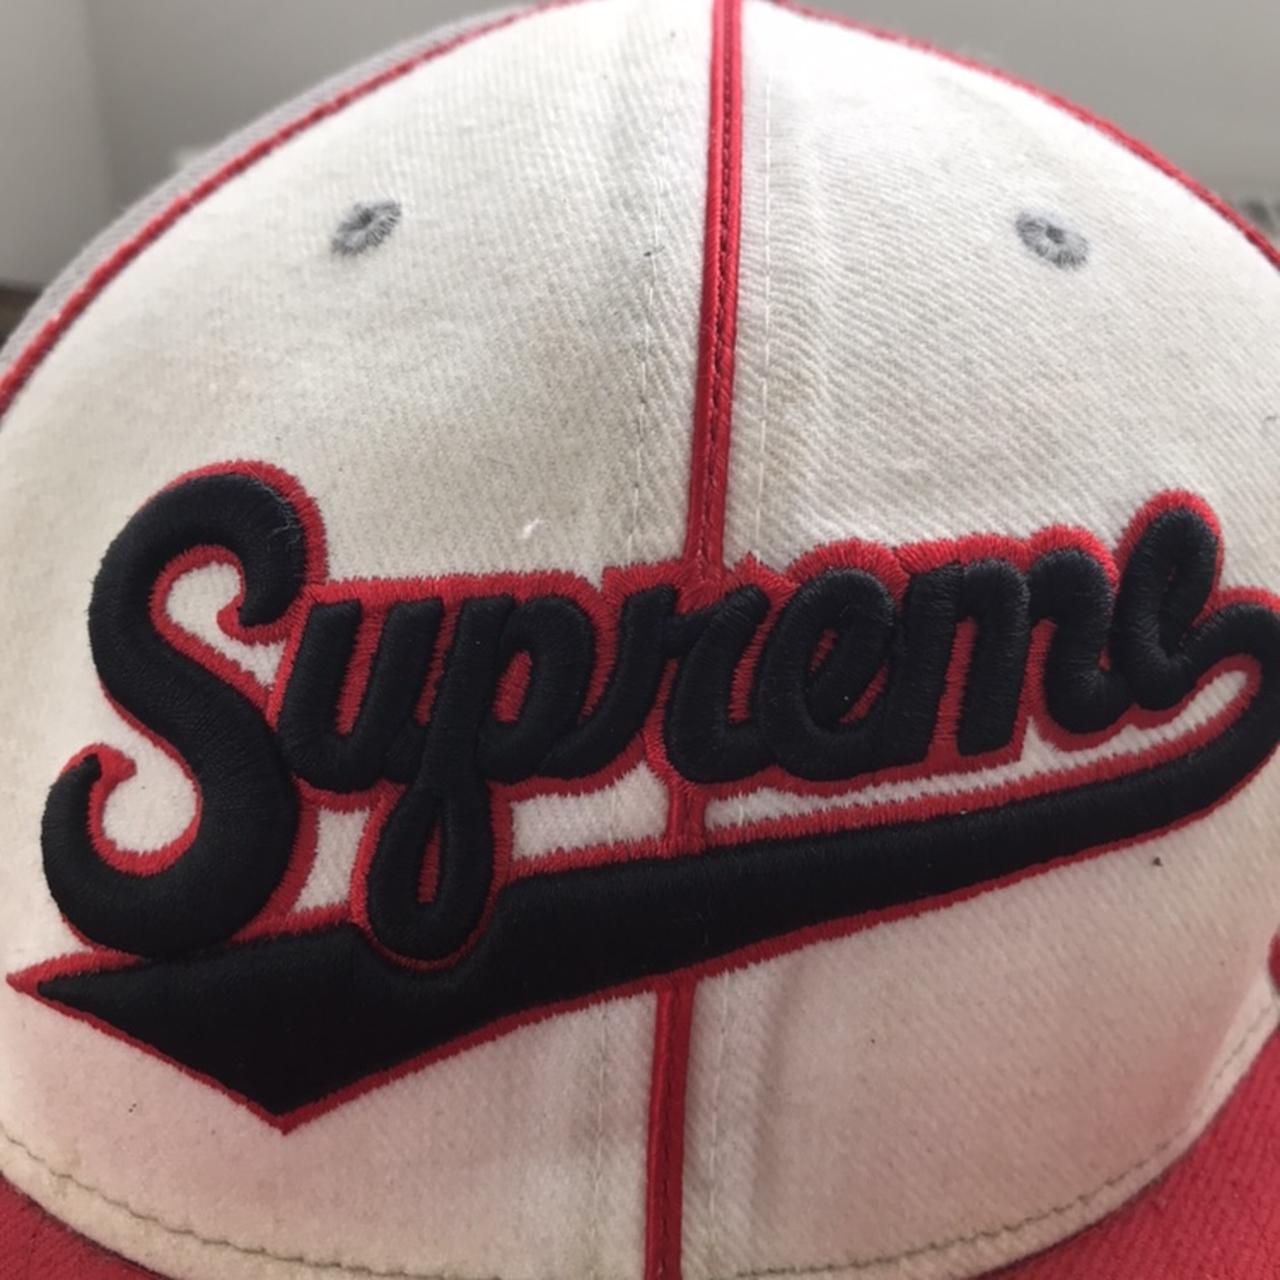 Vintage Supreme x Independent trucker cap Old Preme - Depop